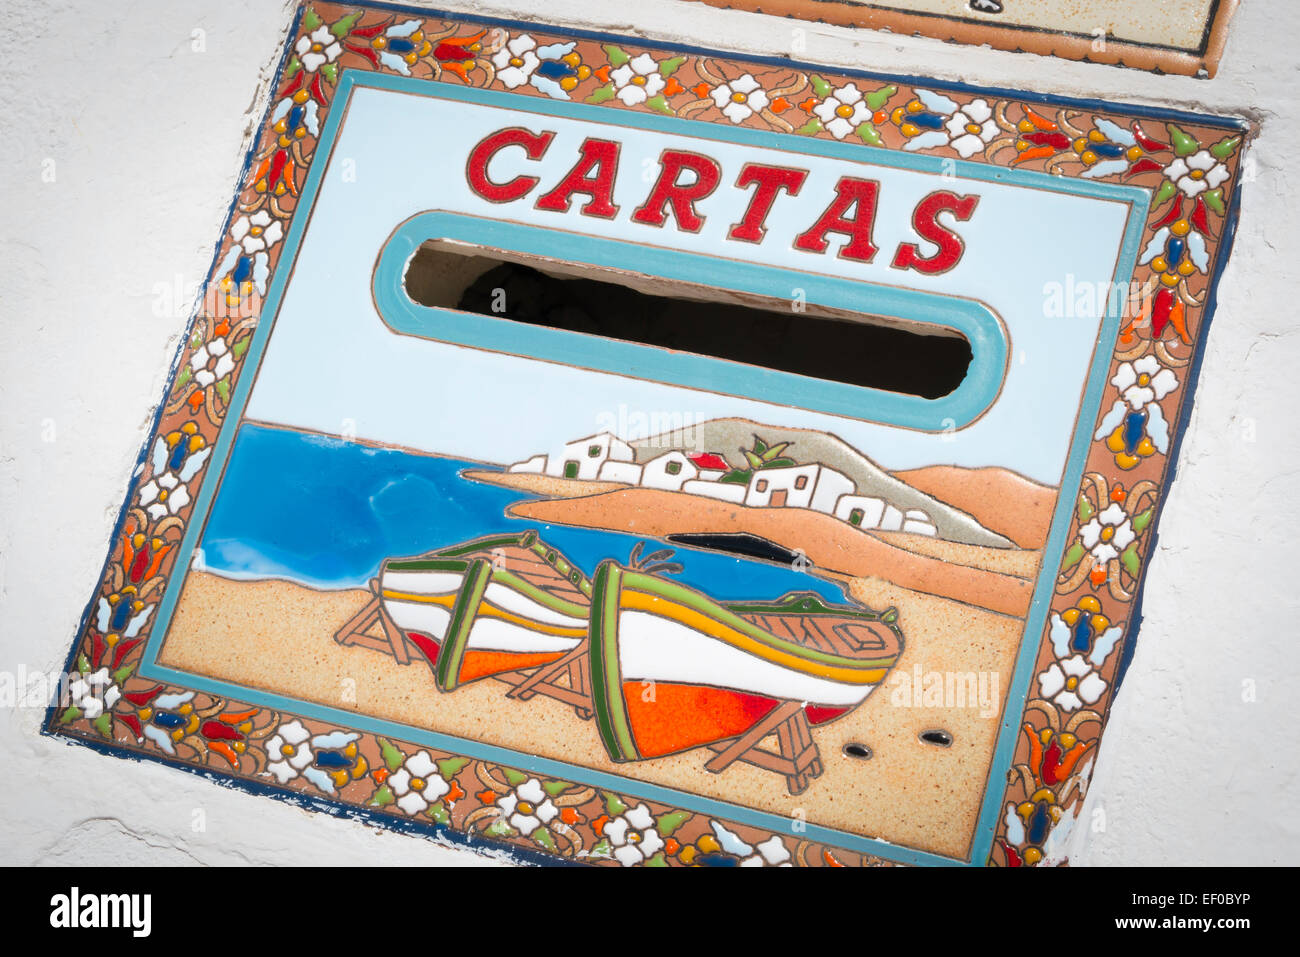 Cartas postbox sur un bien immobilier résidentiel Fuerteventura Canaries Espagne Banque D'Images